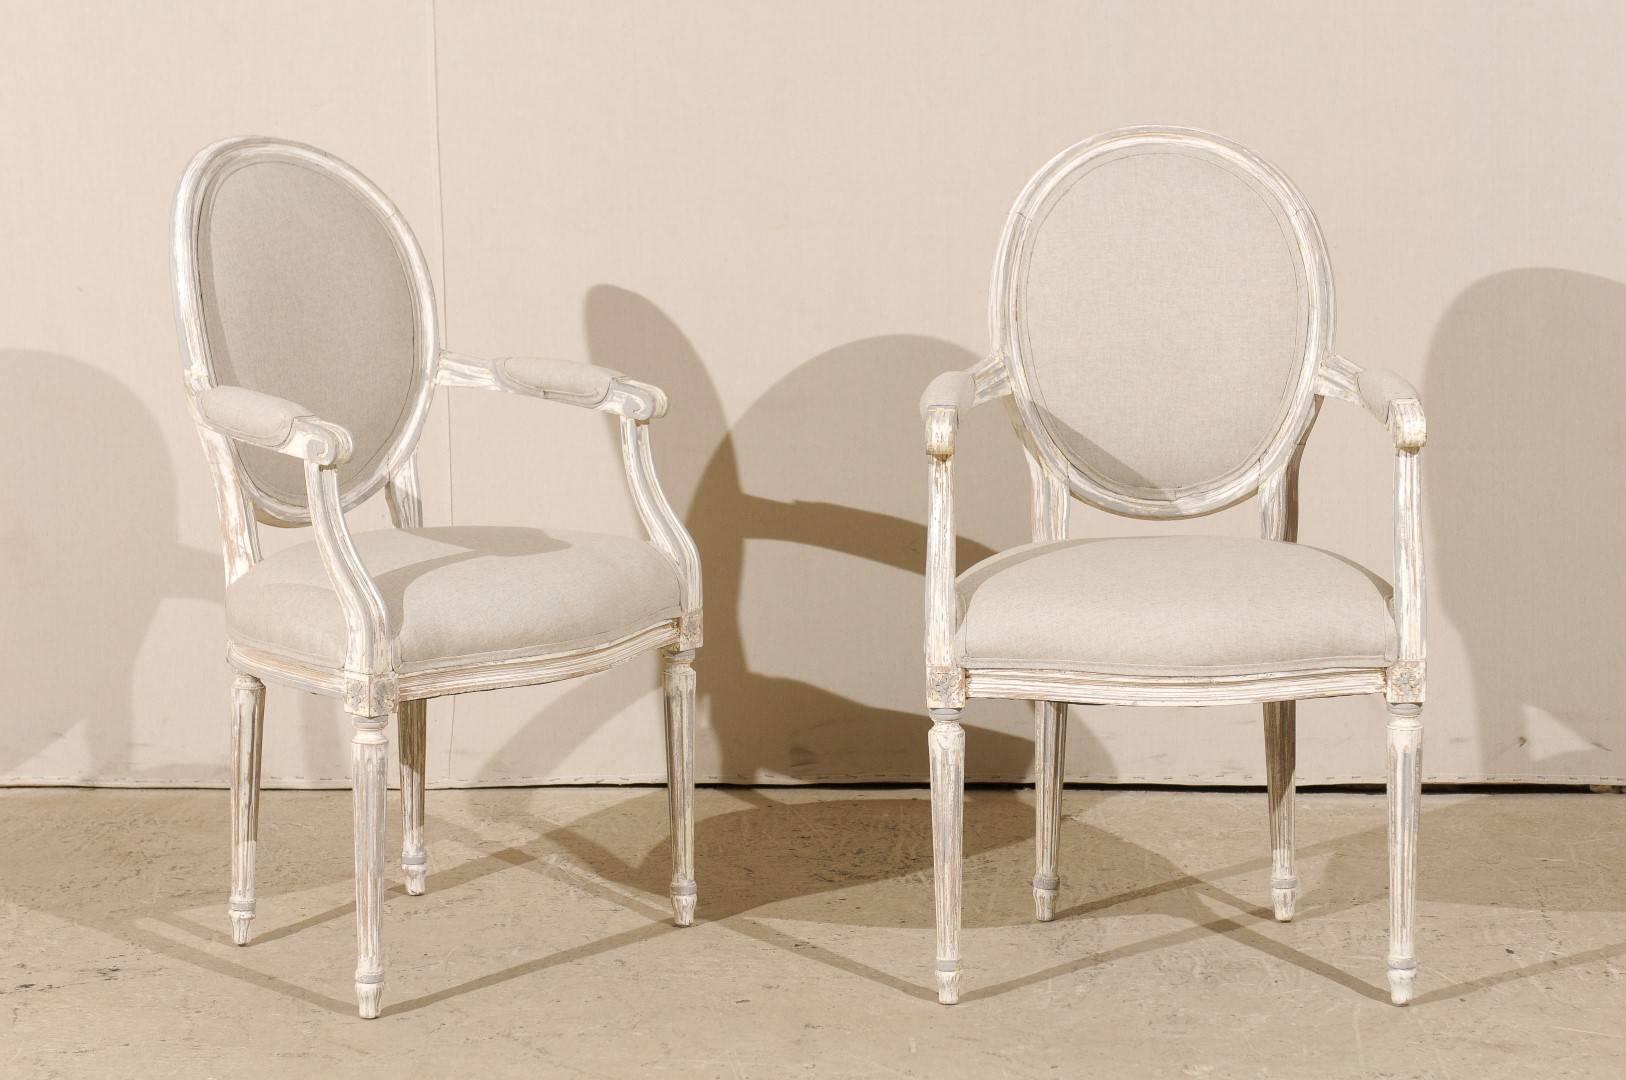 Ein Paar französischer Sessel im Louis XVI-Stil mit ovaler Rückenlehne aus bemaltem Holz, gepolstert mit Akzent. Dieses Paar französischer Stühle zeichnet sich durch ovale Rückenlehnen, geschwungene und teilweise gepolsterte Armlehnen, vier